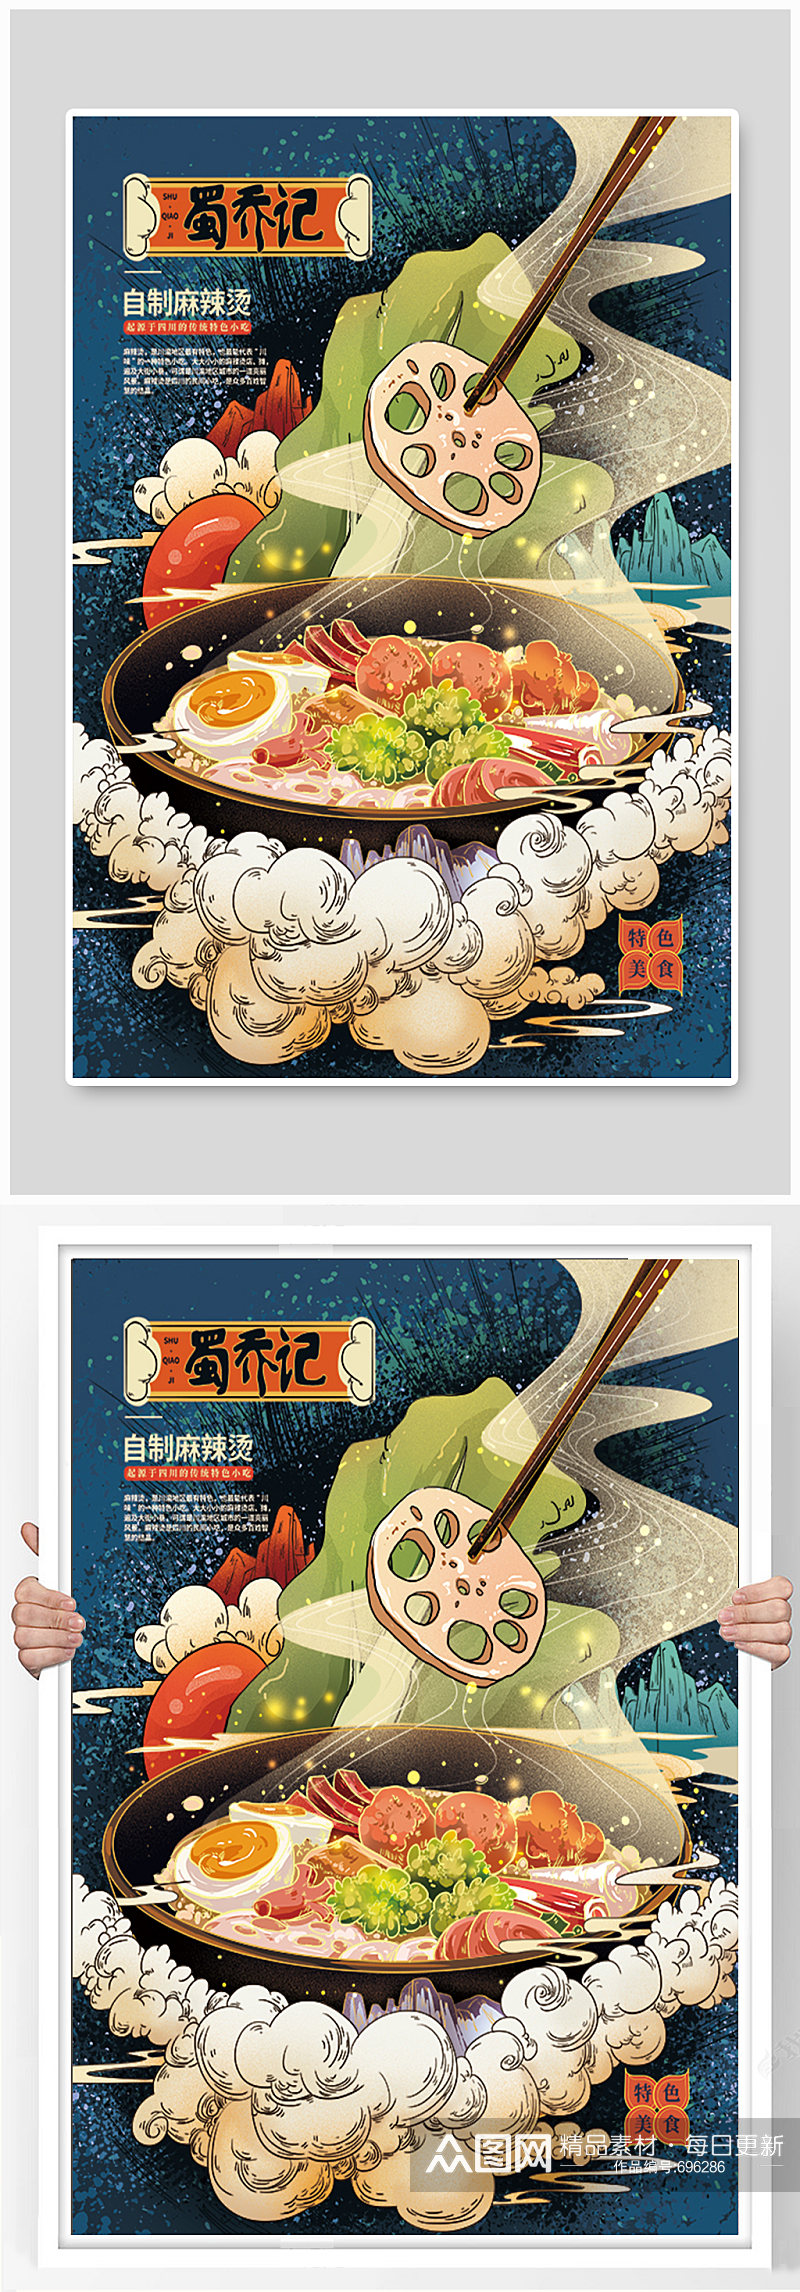 手绘中式麻辣烫美食宣传海报素材